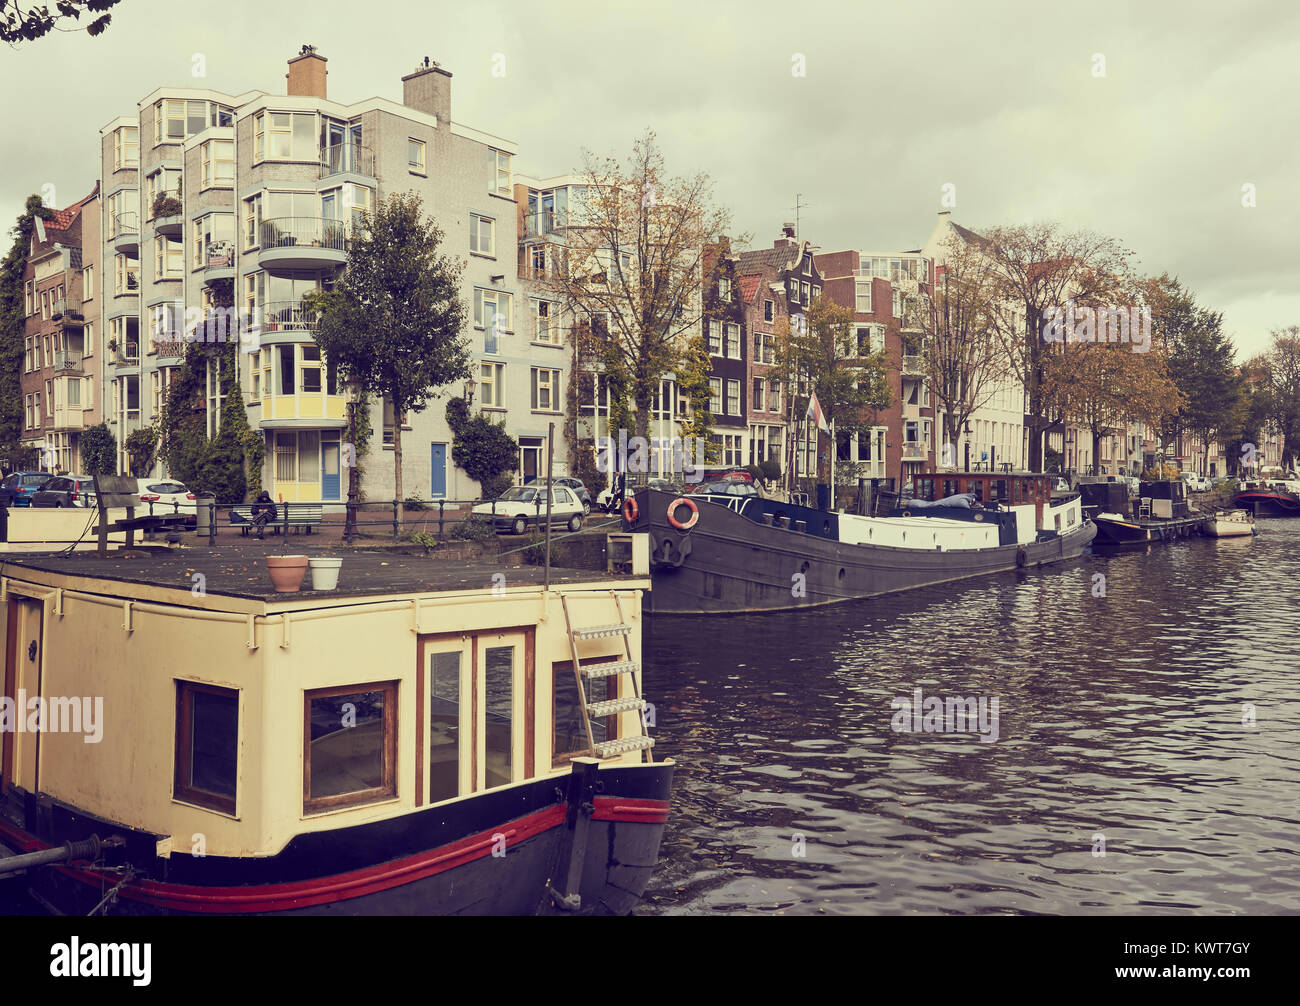 Blick entlang der Oude Schans ein breiter Kanal im östlichen Teil der Innenstadt, Amsterdam, Holland Stockfoto